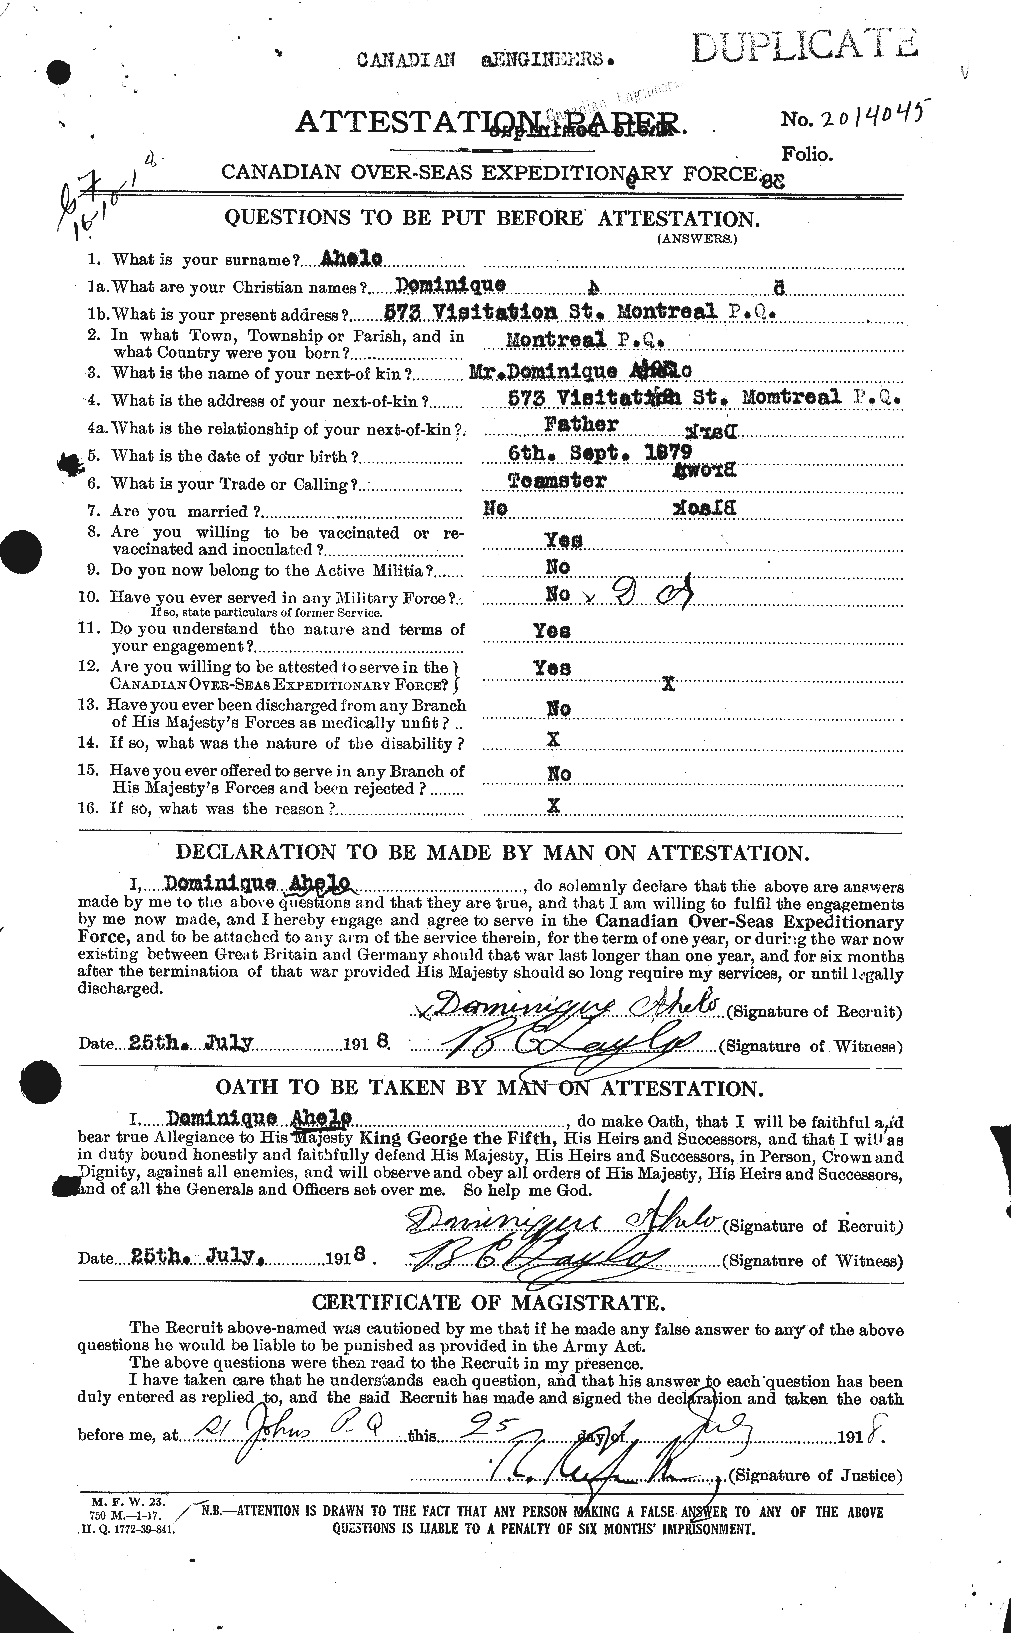 Dossiers du Personnel de la Première Guerre mondiale - CEC 203851a